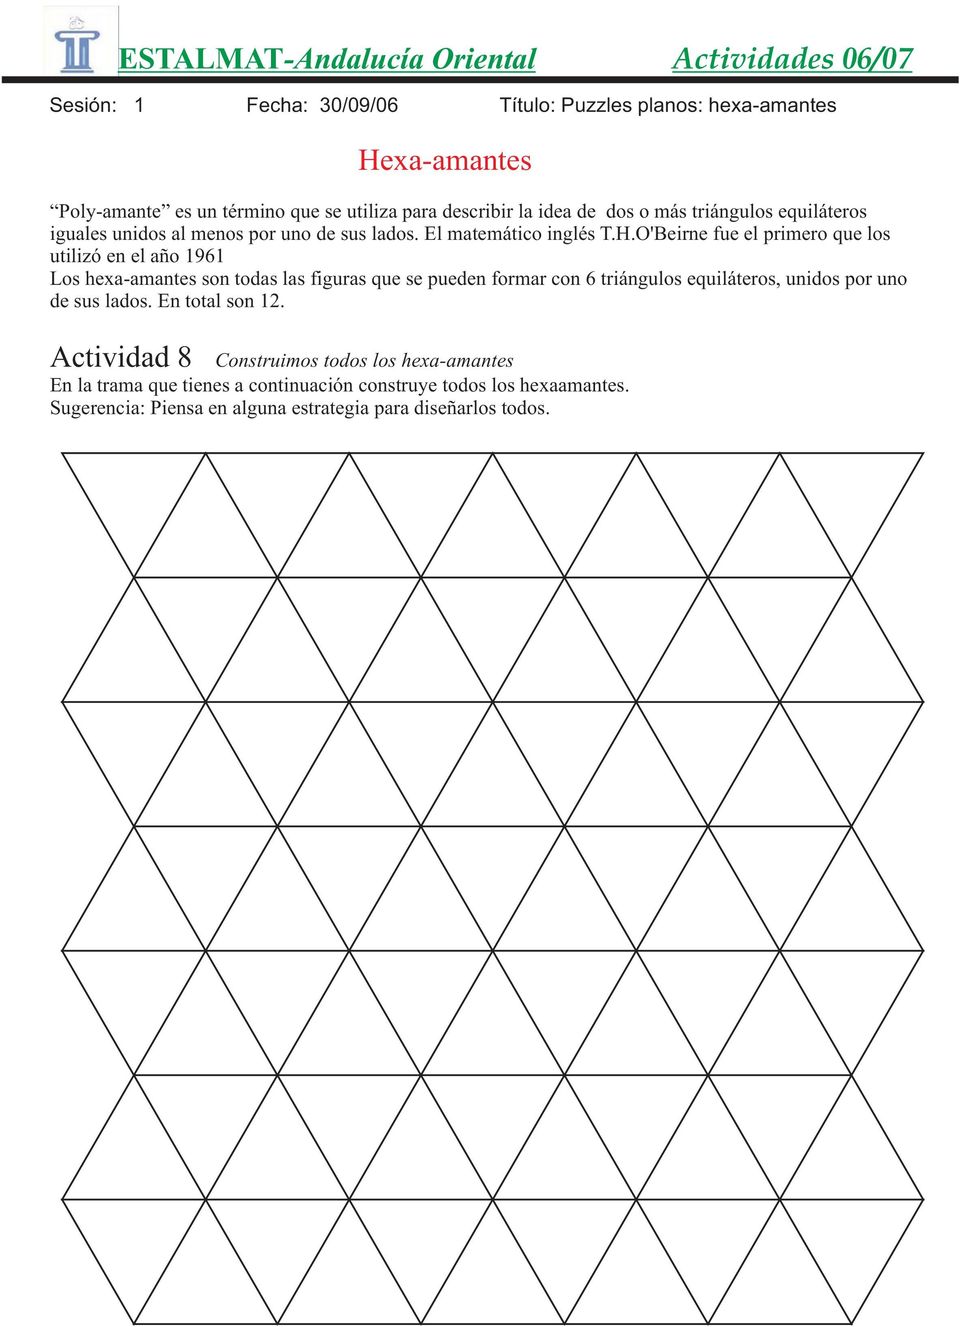 O'Beirne fue el primero que los utilizó en el año 1961 Los hexa-amantes son todas las figuras que se pueden formar con 6 triángulos equiláteros, unidos